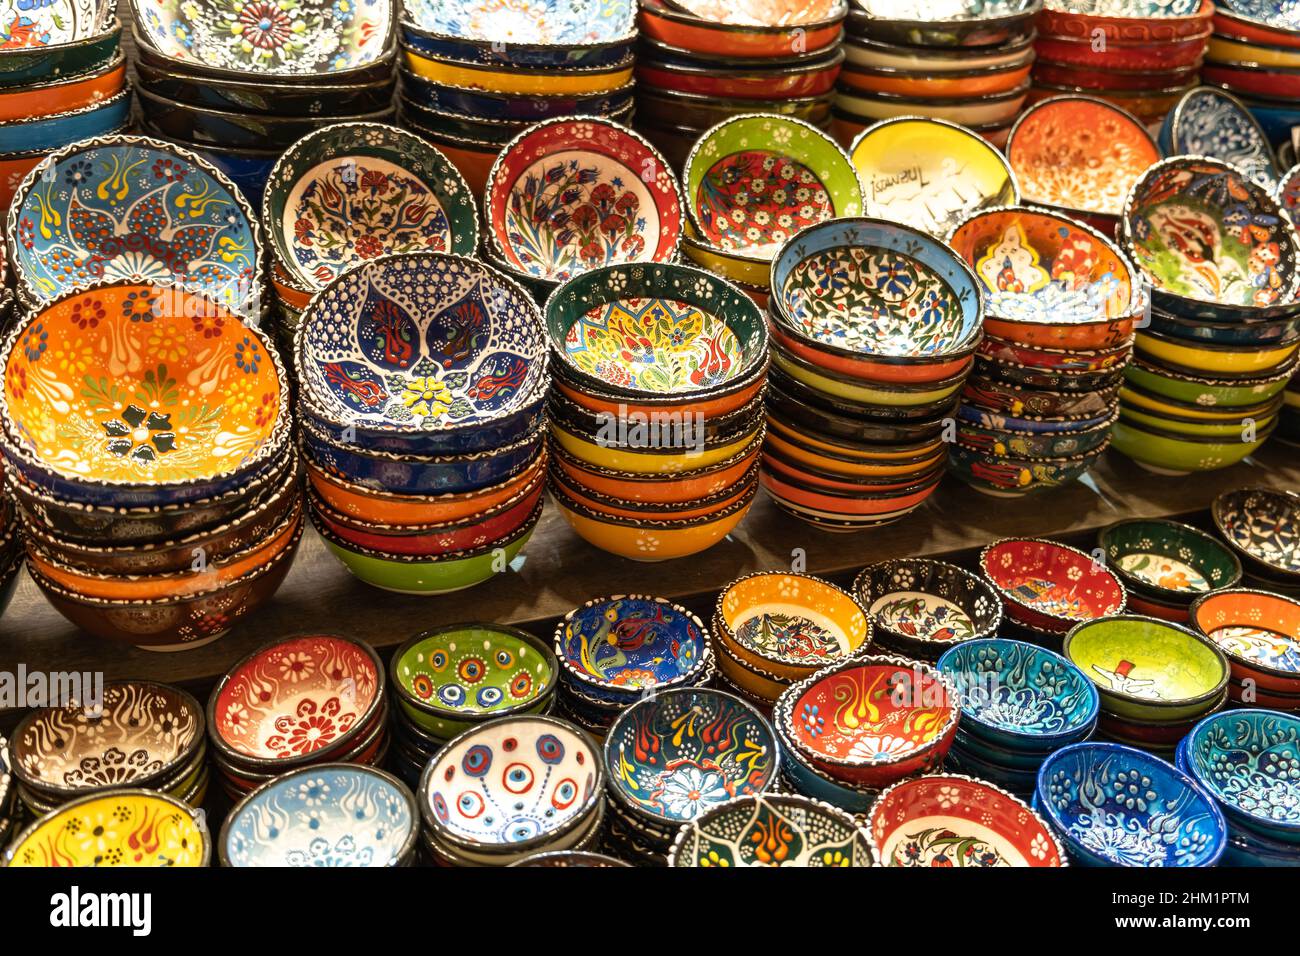 Traditionelle türkische Keramik, Keramik, Schale im Basar. Handgemachte  Geschenk Keramik Schalen, Keramik und Teller Stockfotografie - Alamy